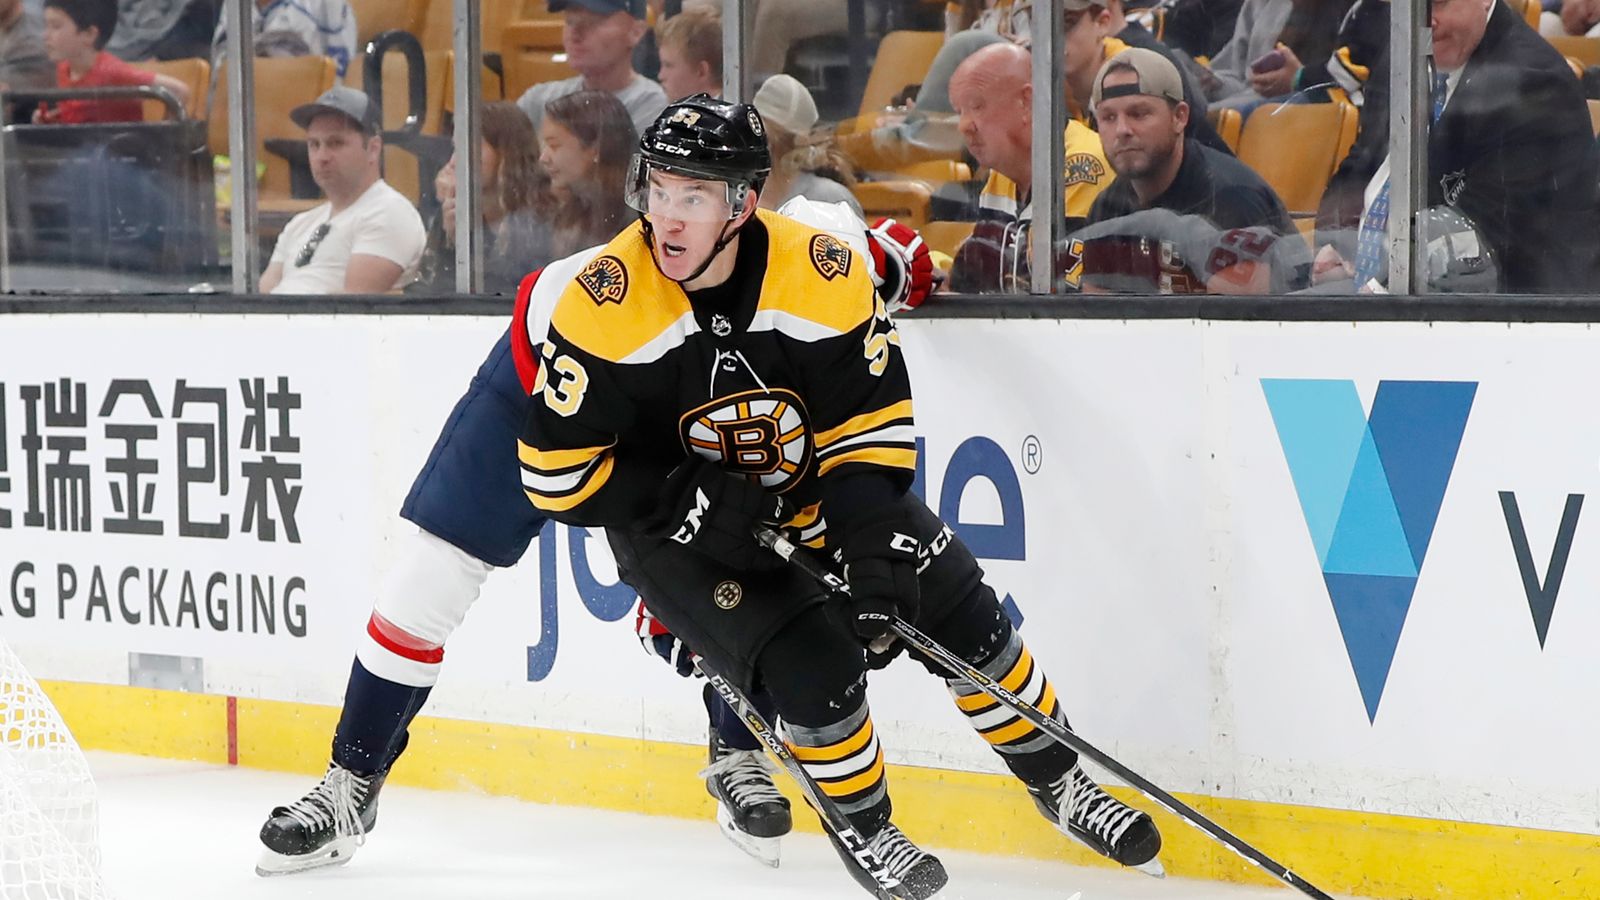 2019-20 Providence Bruins (AHL) Max Lagace (goalie)